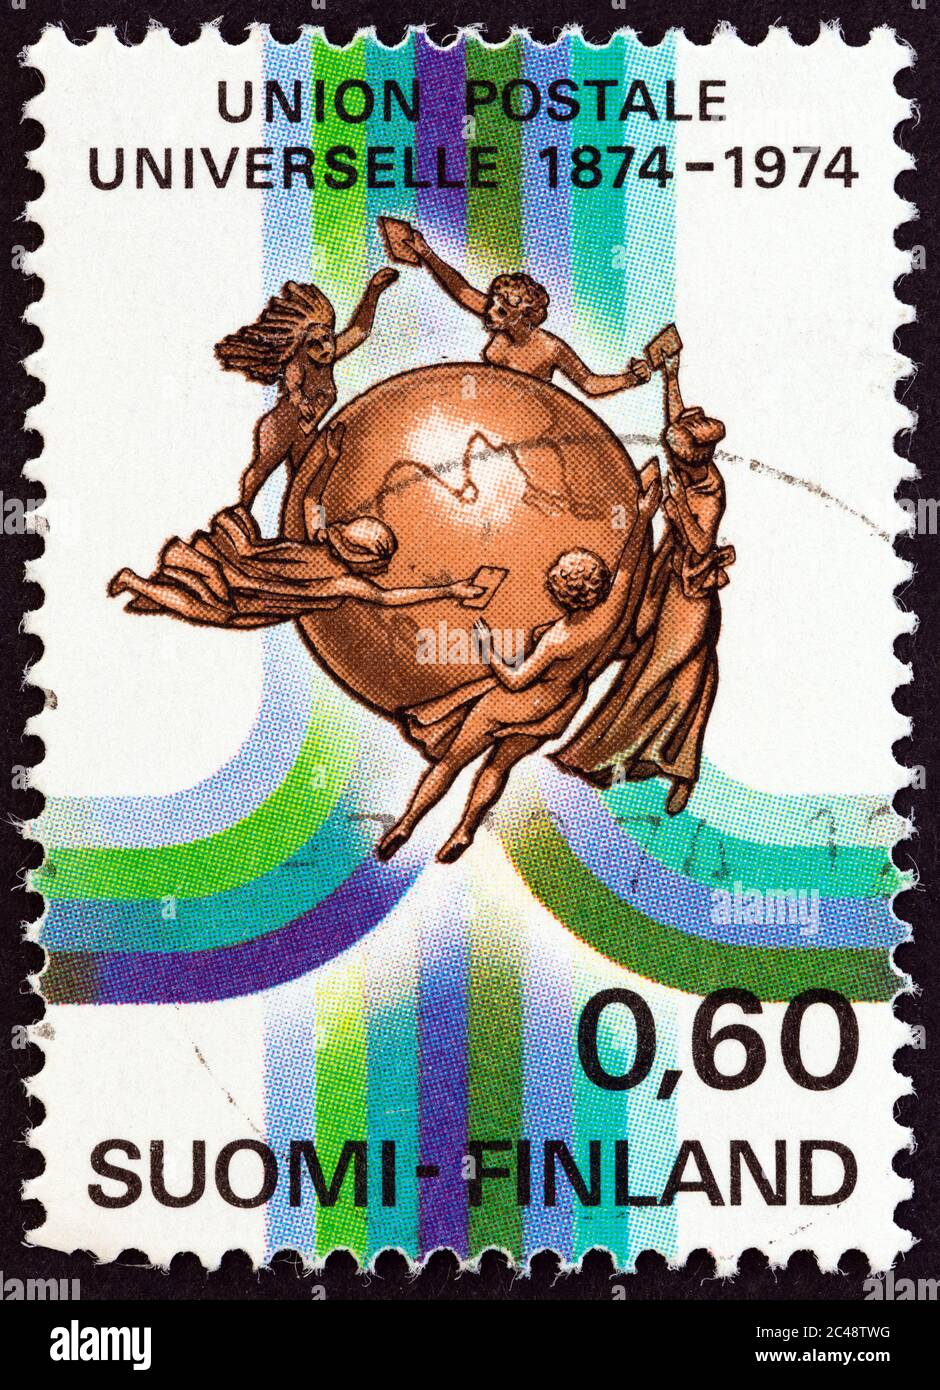 FINLANDE - VERS 1974 : un timbre imprimé en Finlande pour le centenaire de l'Union postale universelle montre l'Union postale universelle Emblème, vers 1974. Banque D'Images